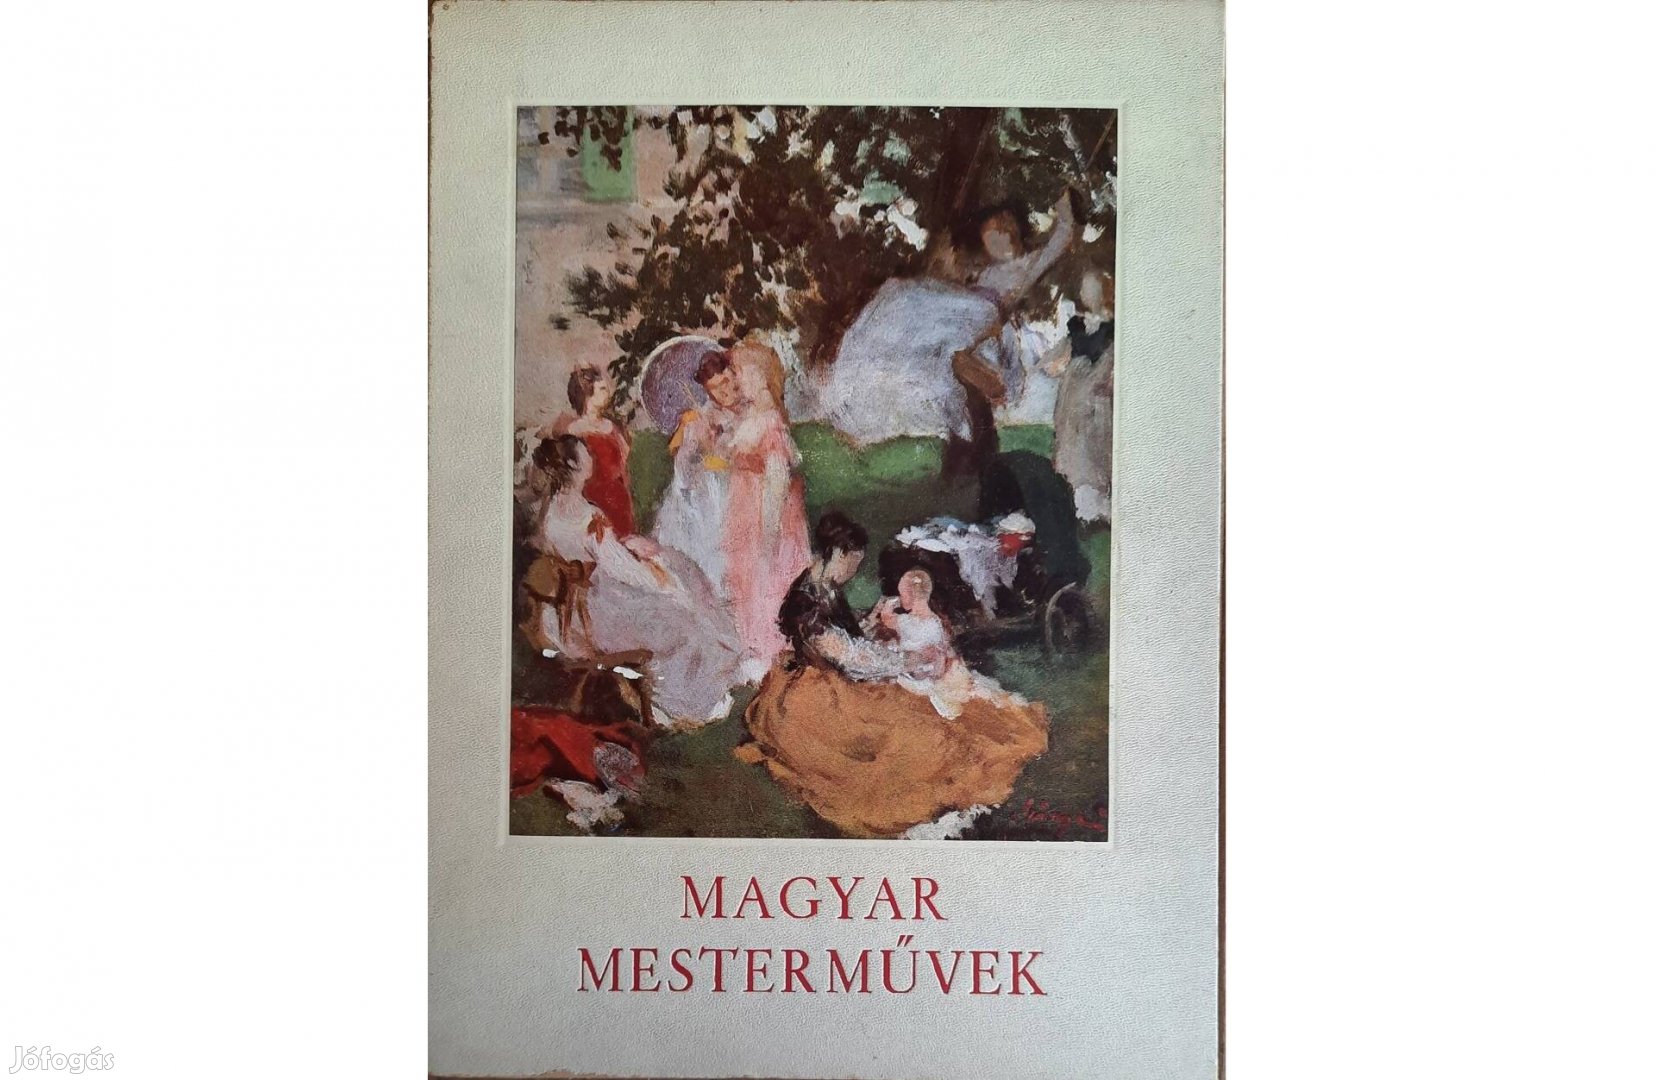 Magyar mesterművek című könyv eladó